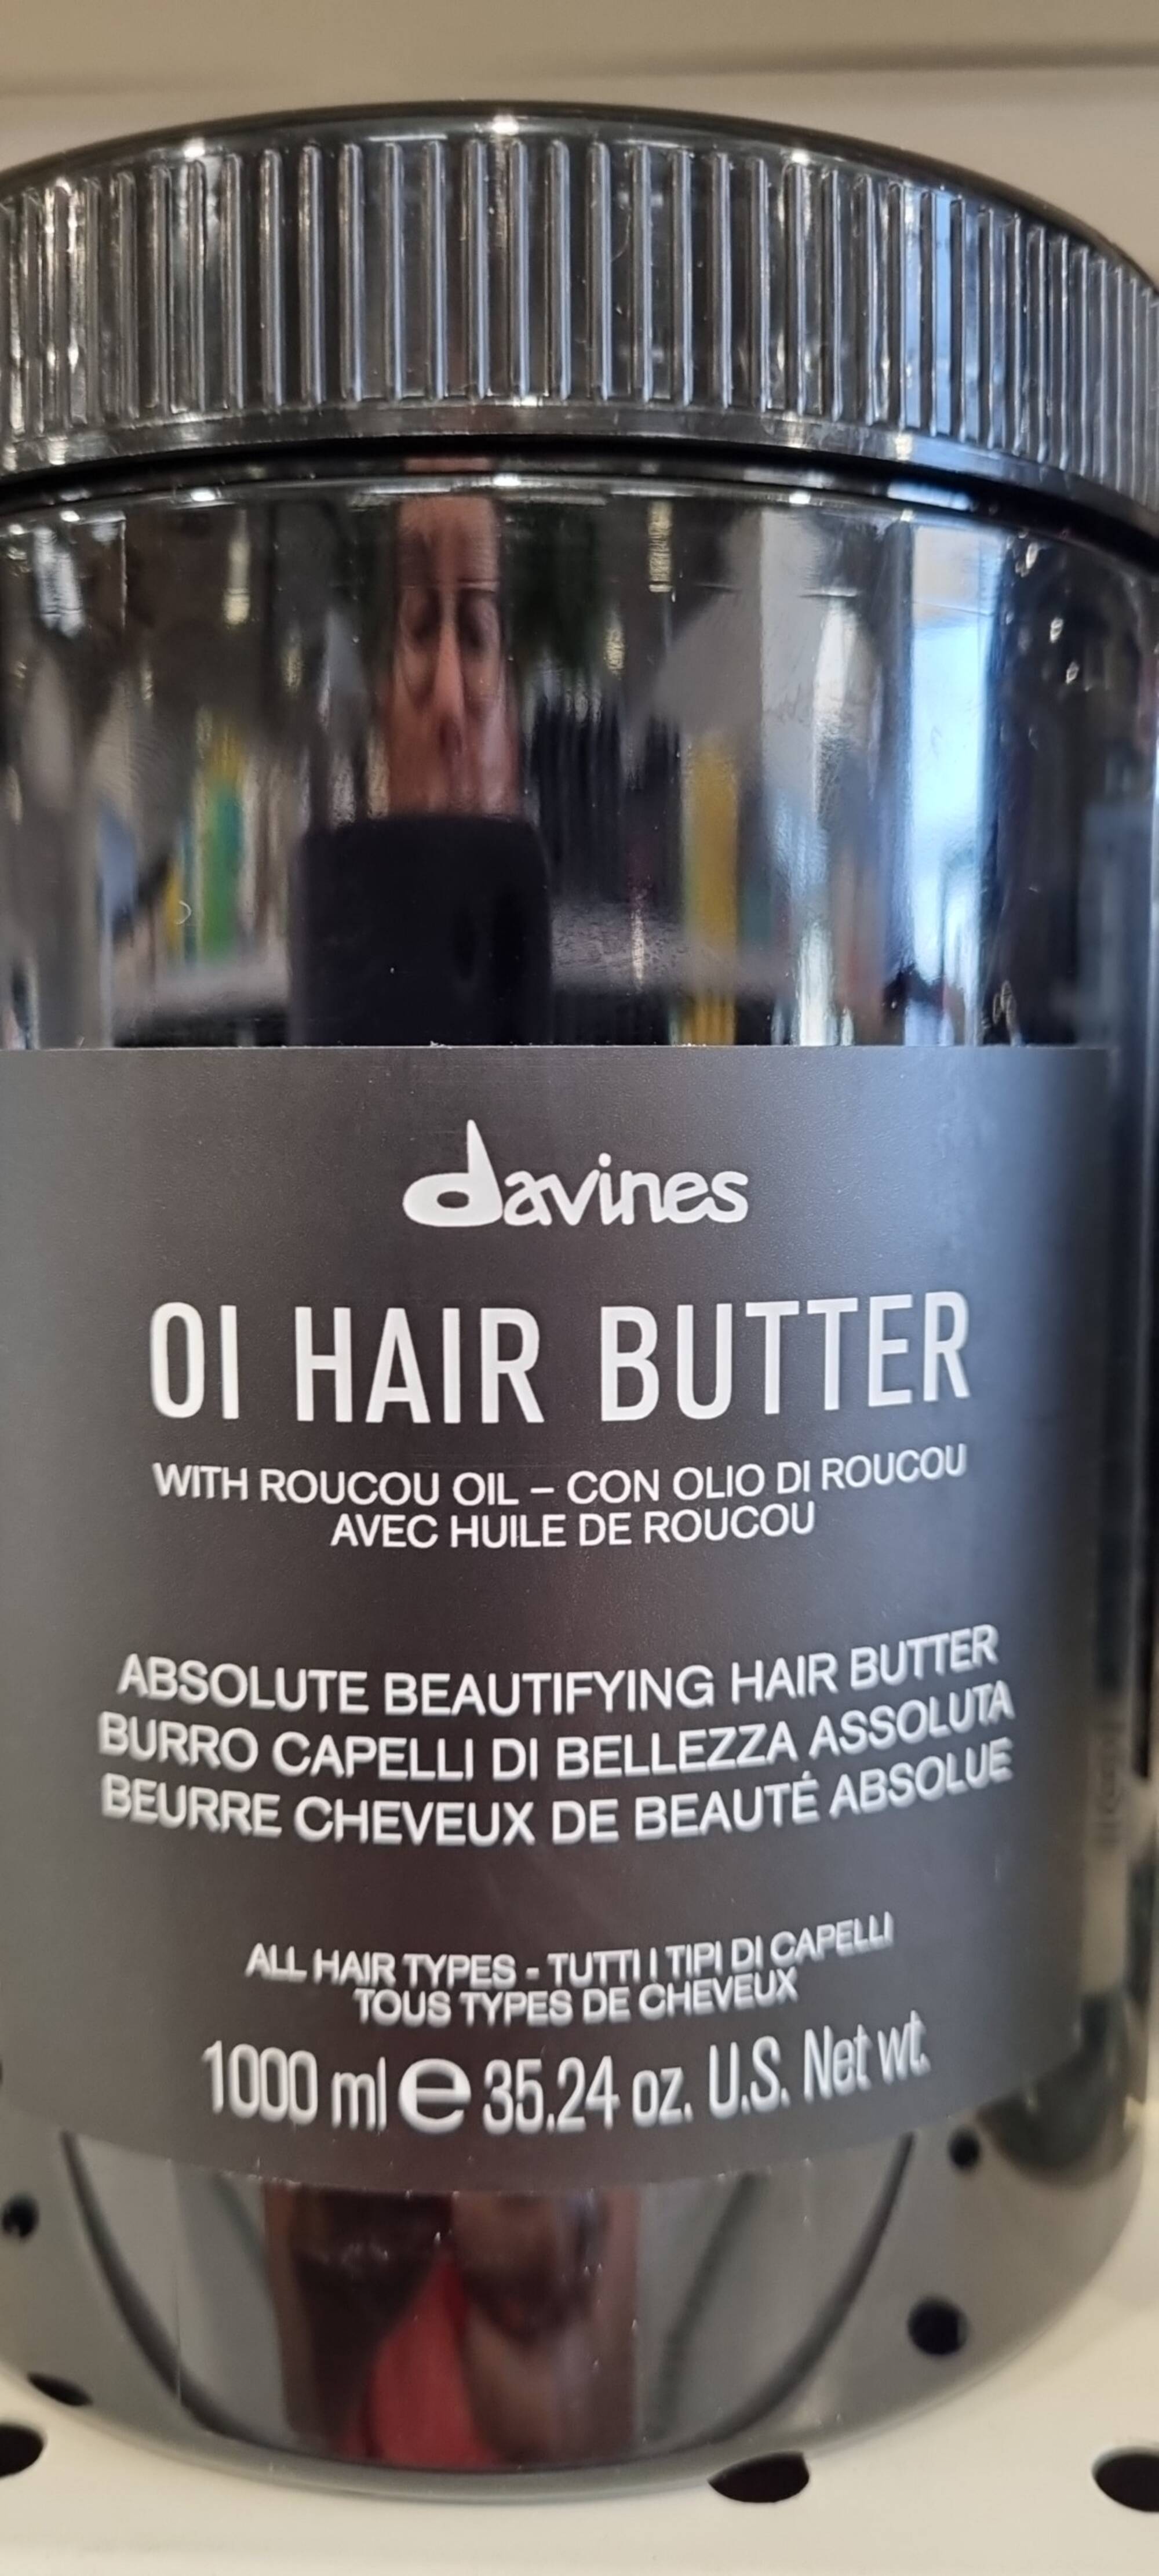 DAVINES - Beurre cheveux de beauté absolue